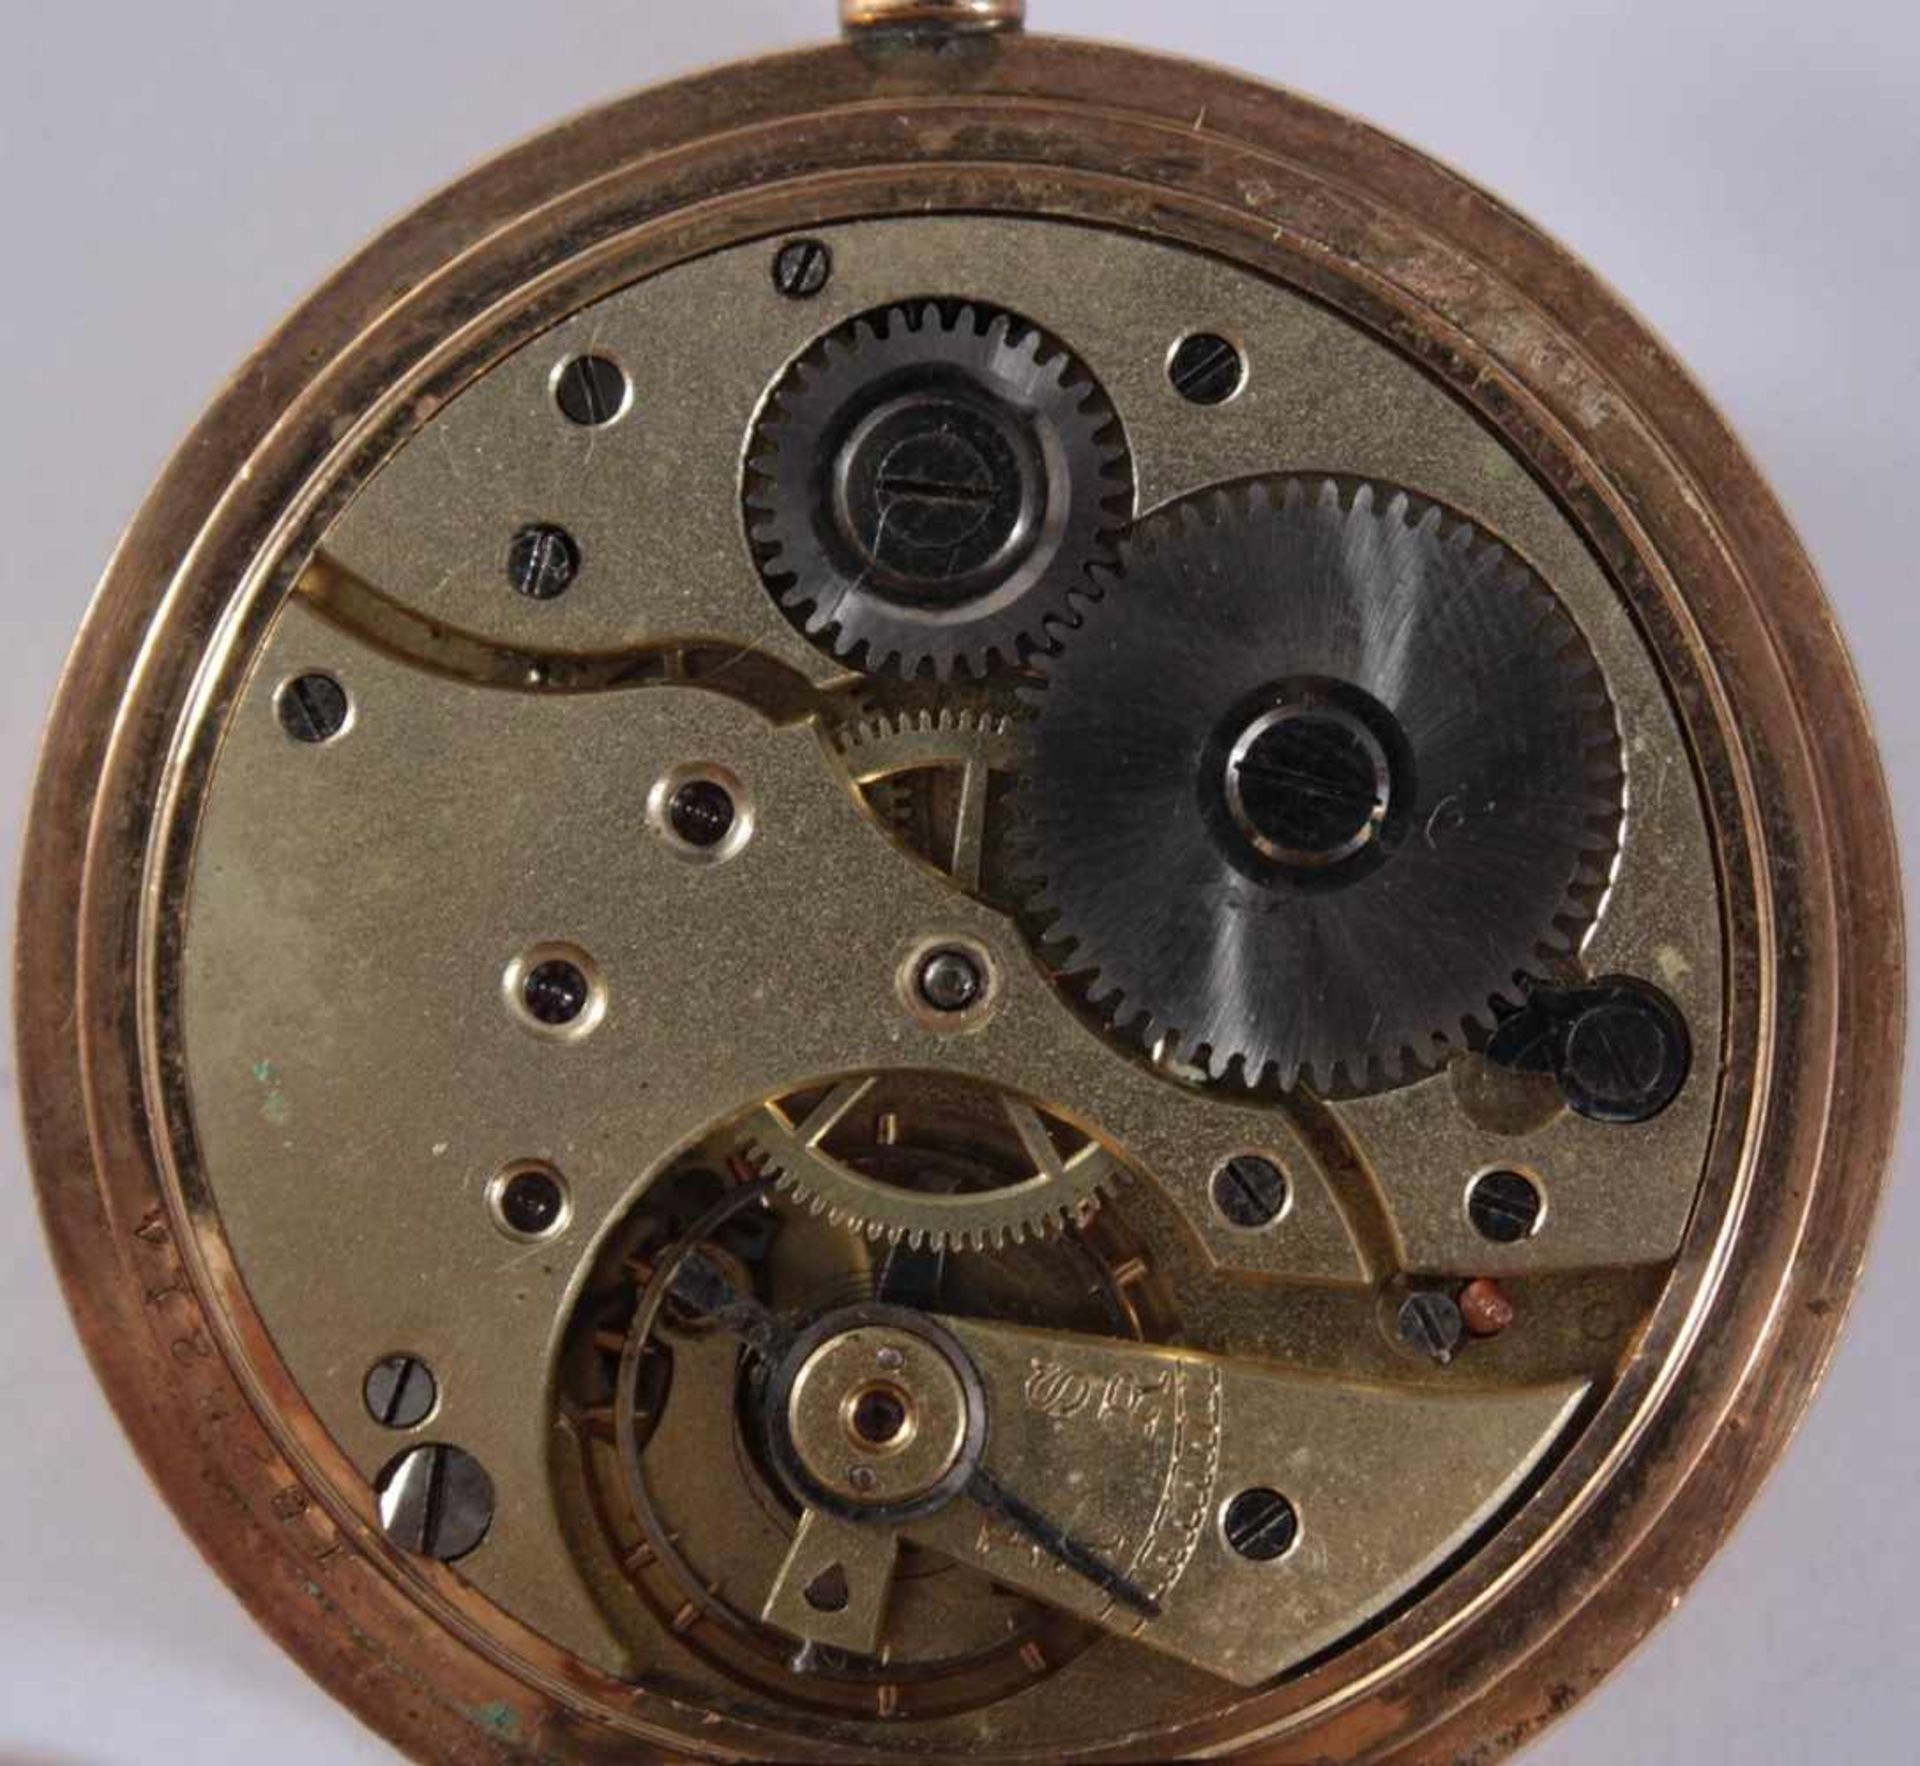 Uhrenkonvolut für Bastler1 Herrentaschenuhr "Illinois", vergoldet, Glas fehlt, beschädigtes - Image 4 of 5